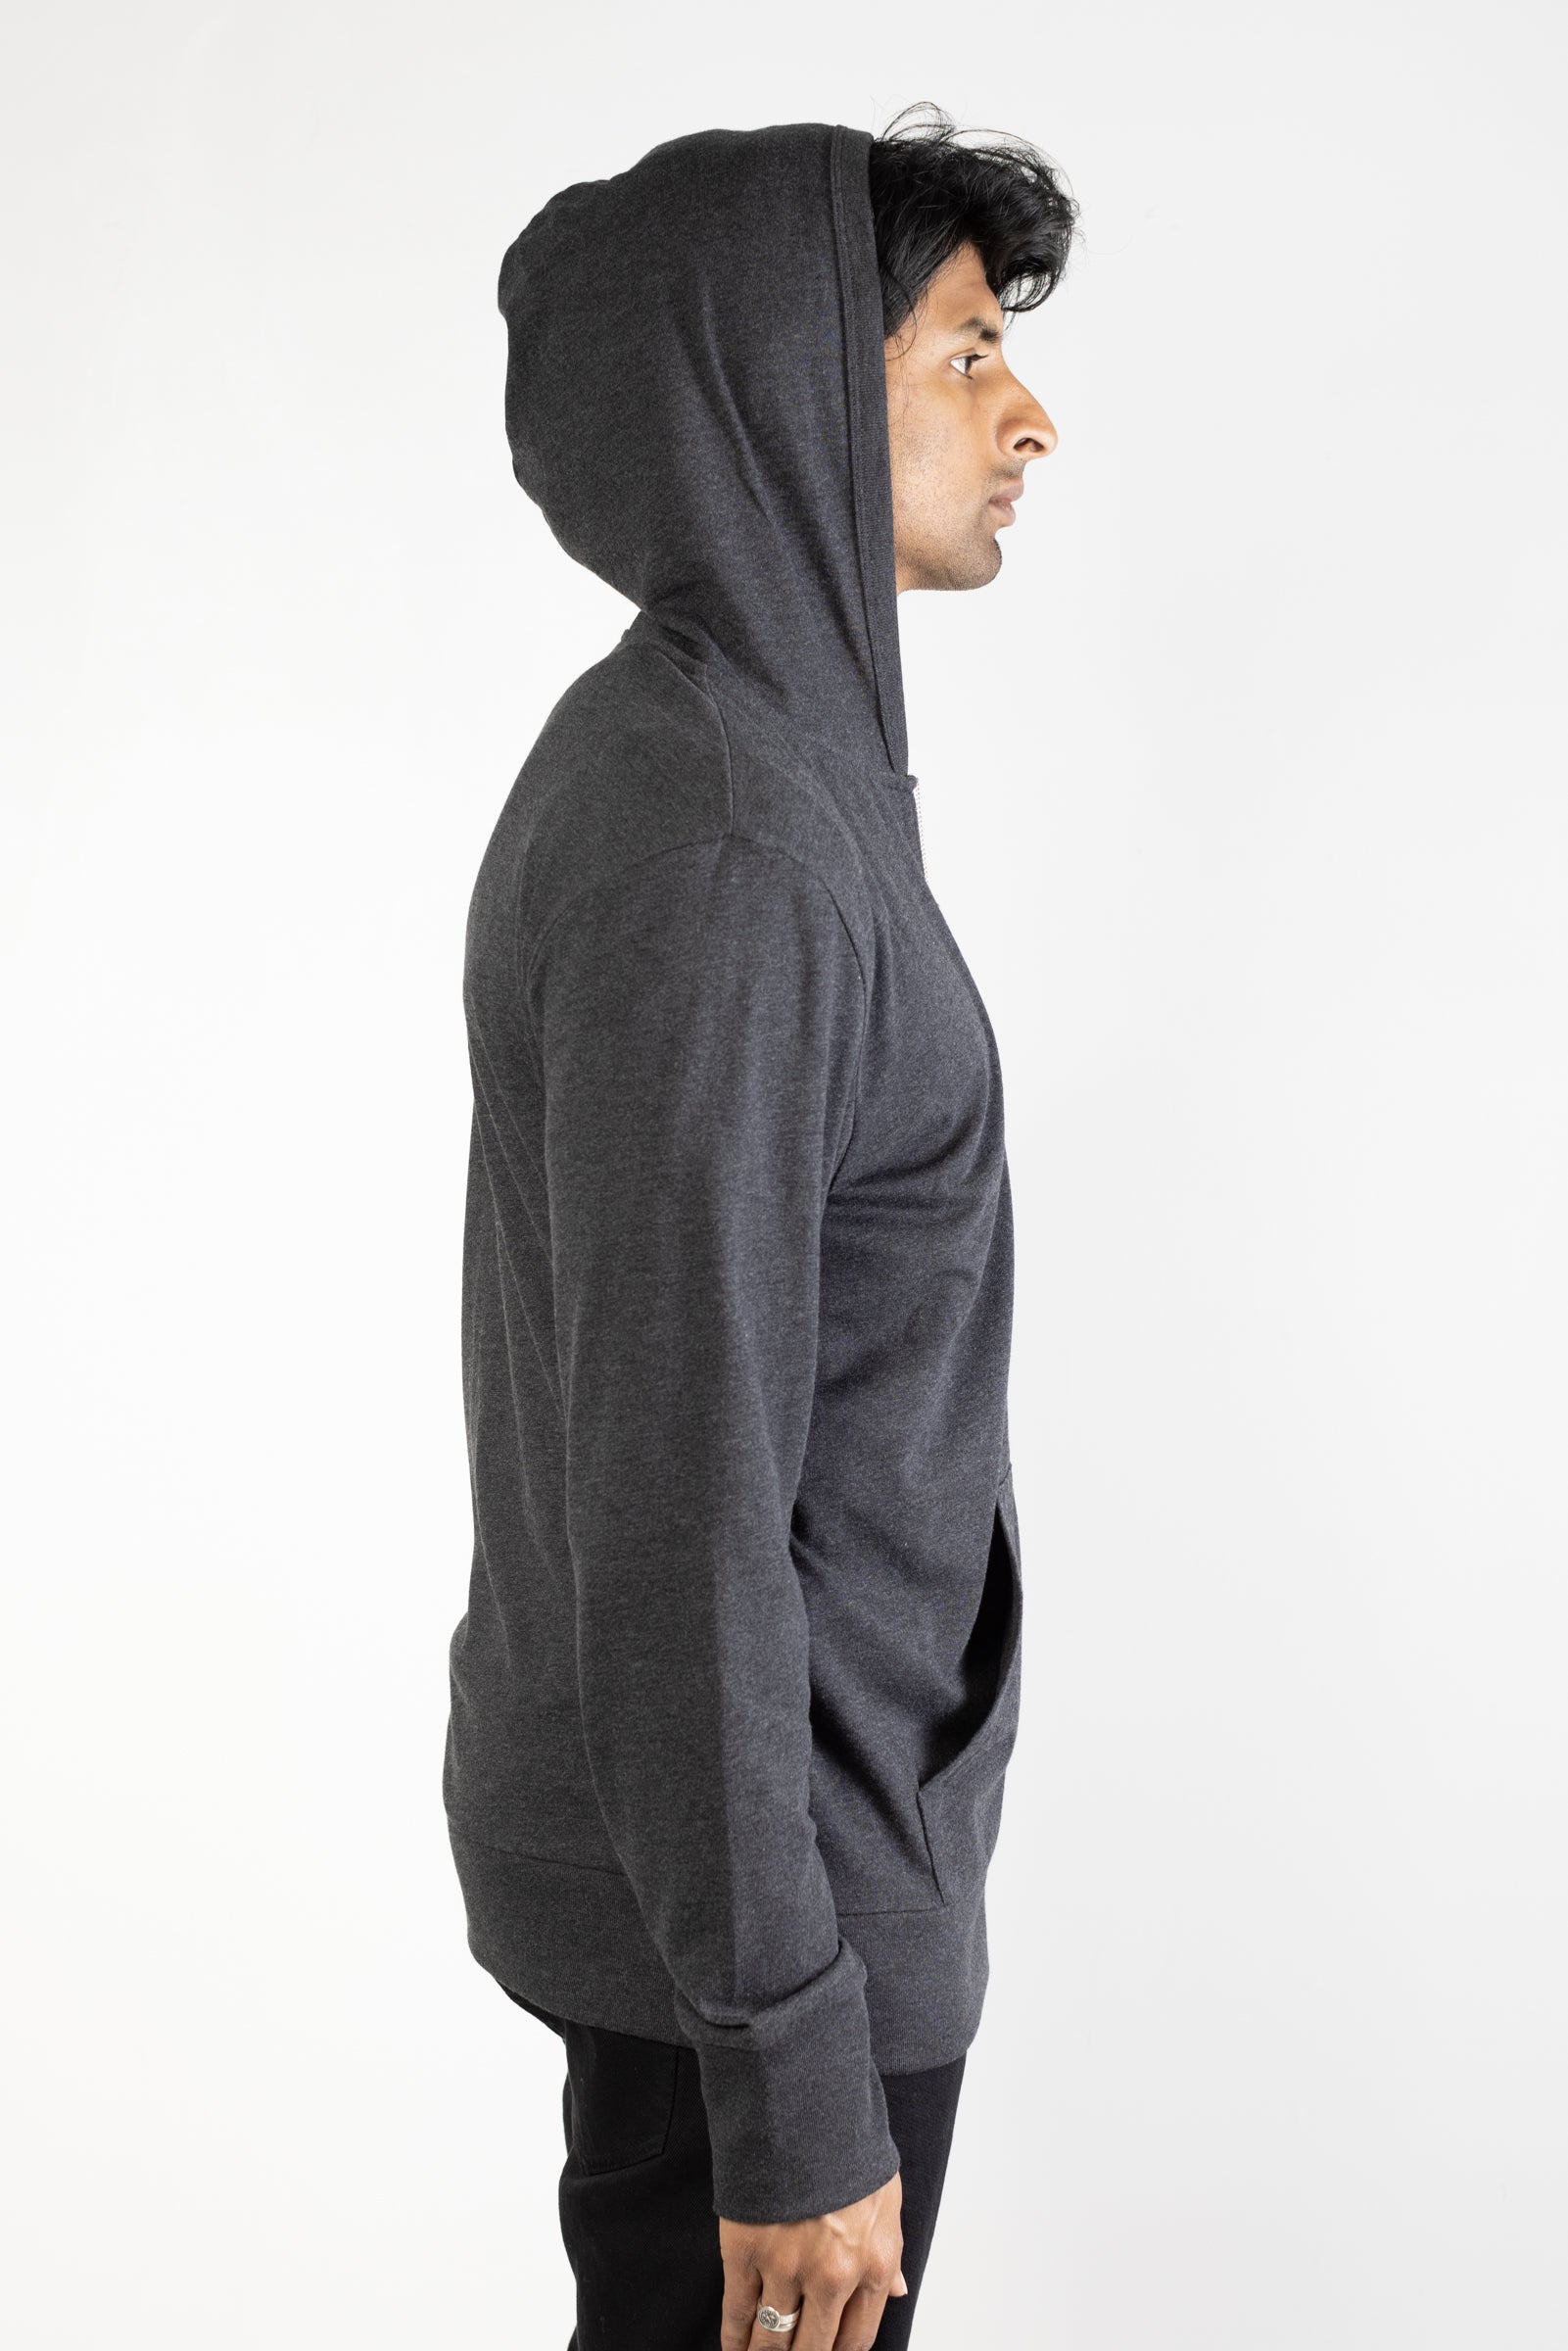 Tri-blend zip hoodie in Charcoal 02